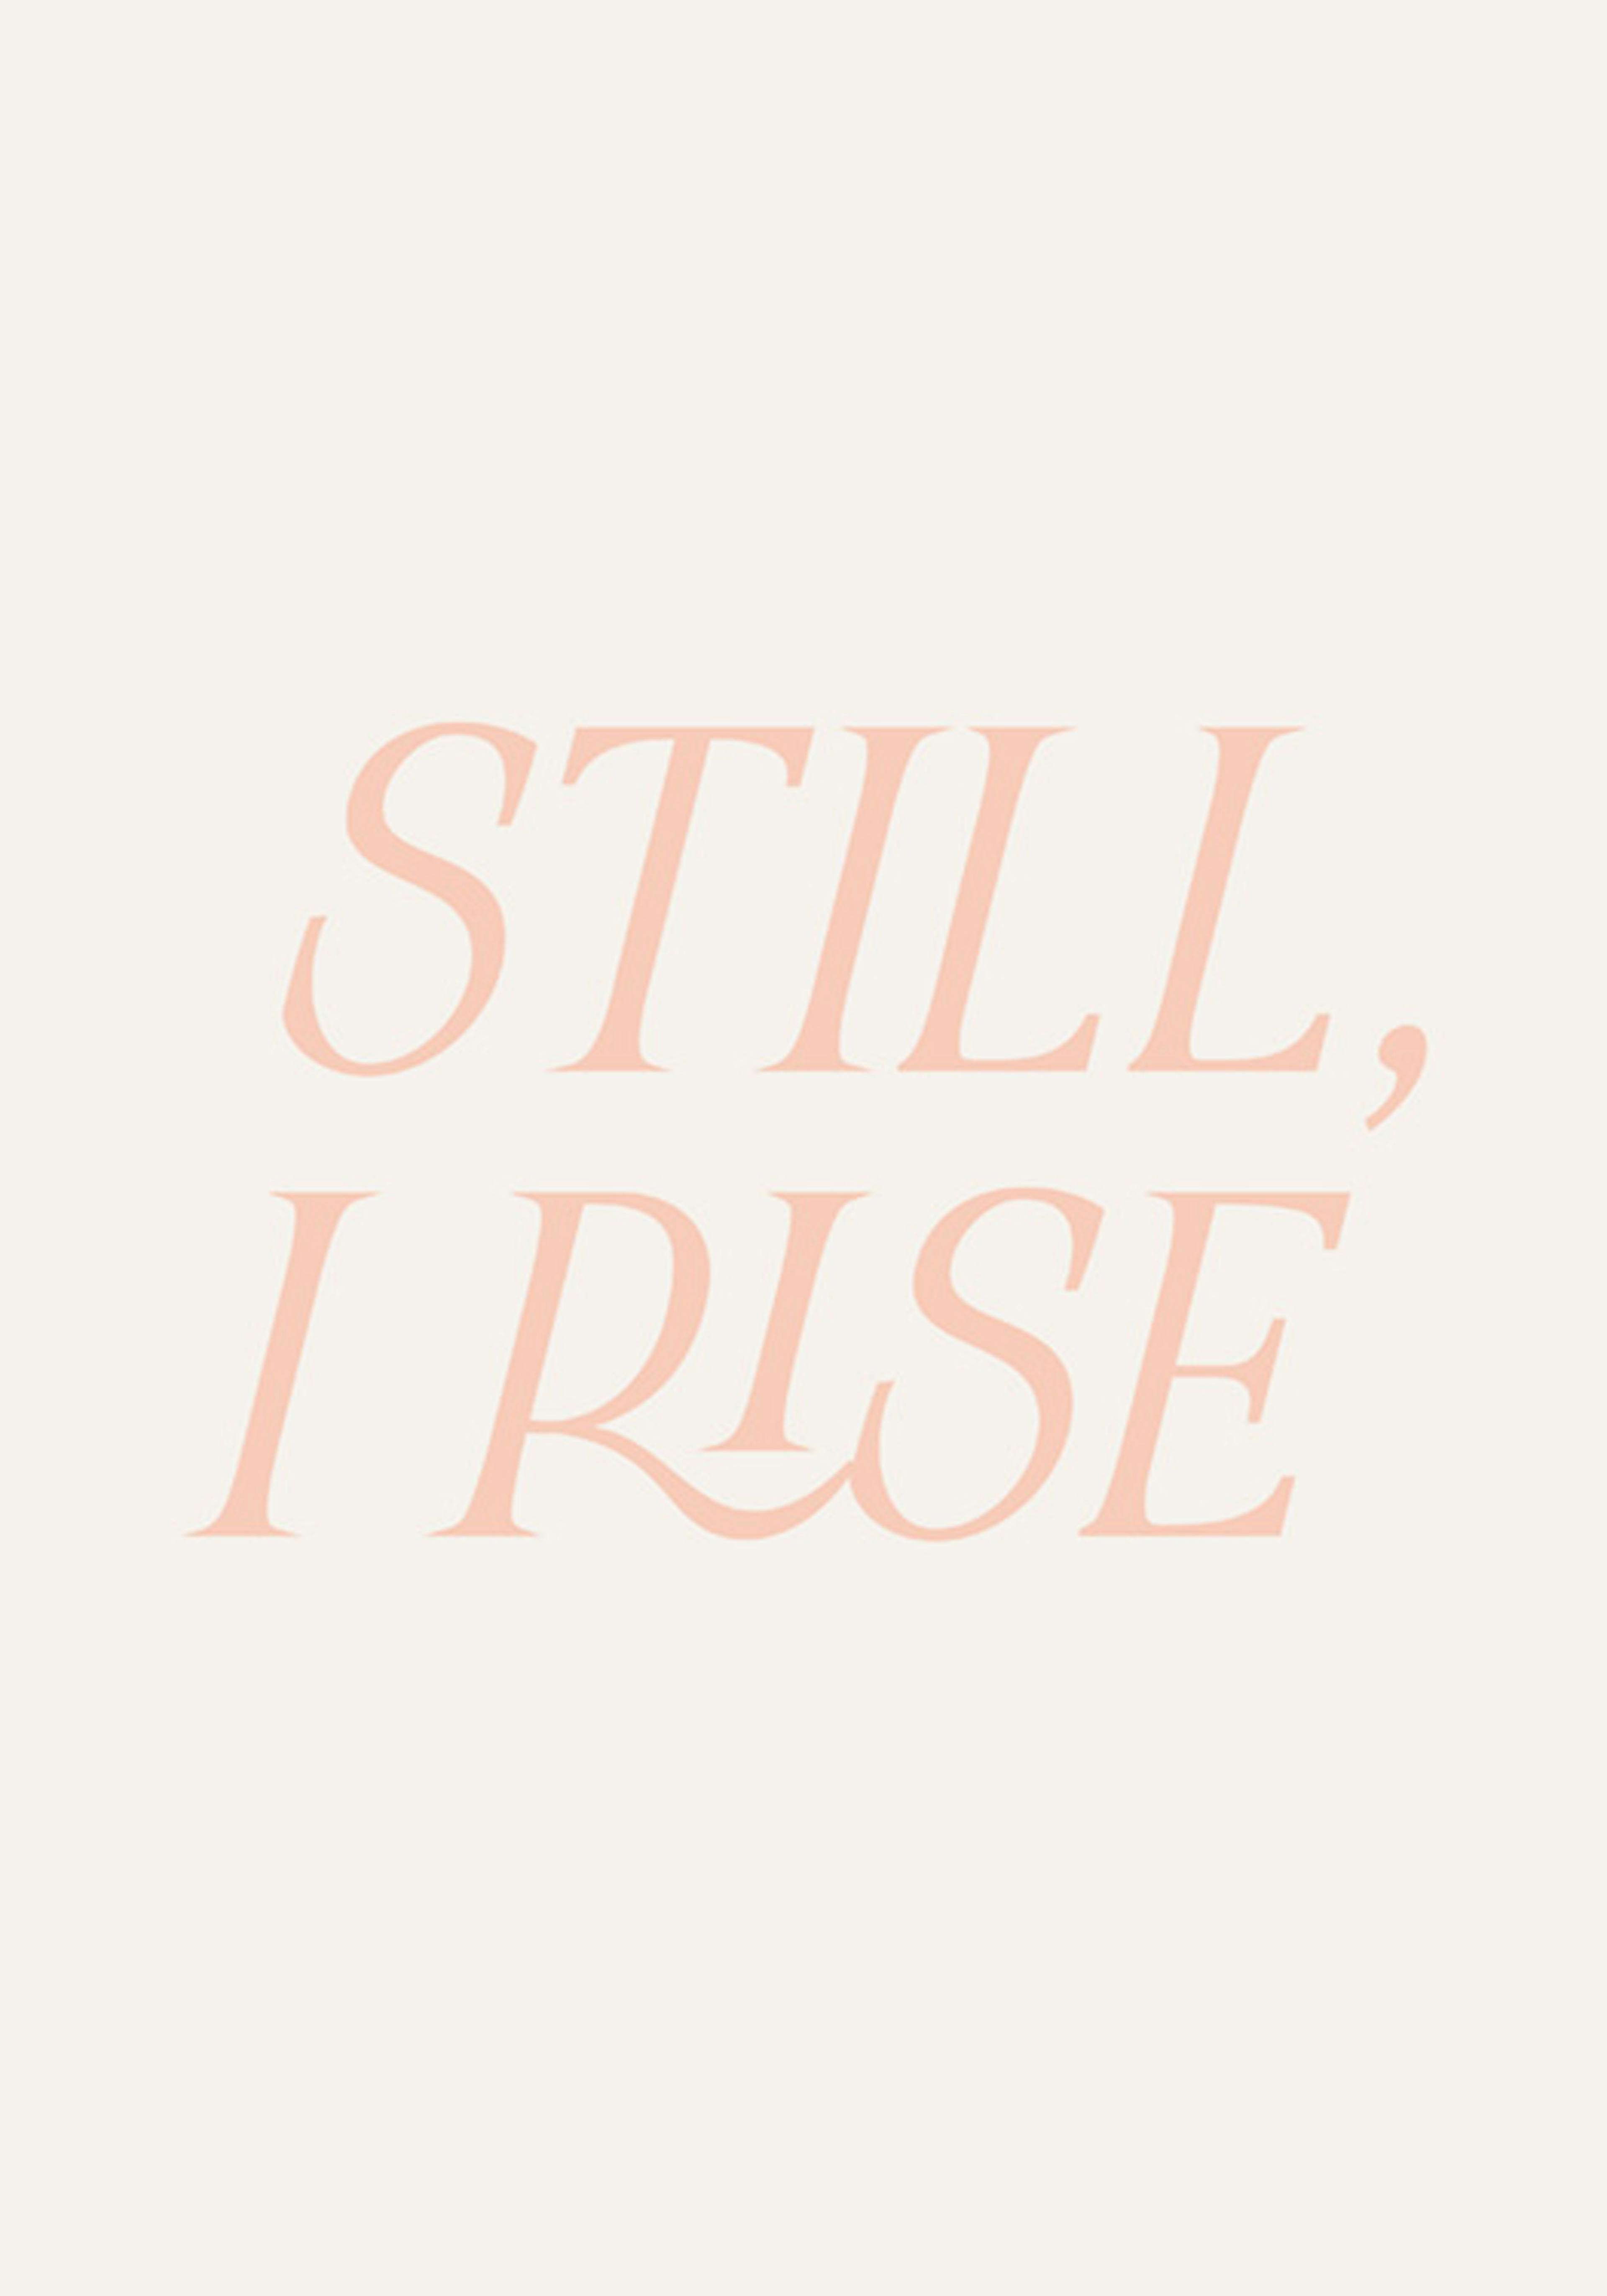 Still, I Rise Plakat 0